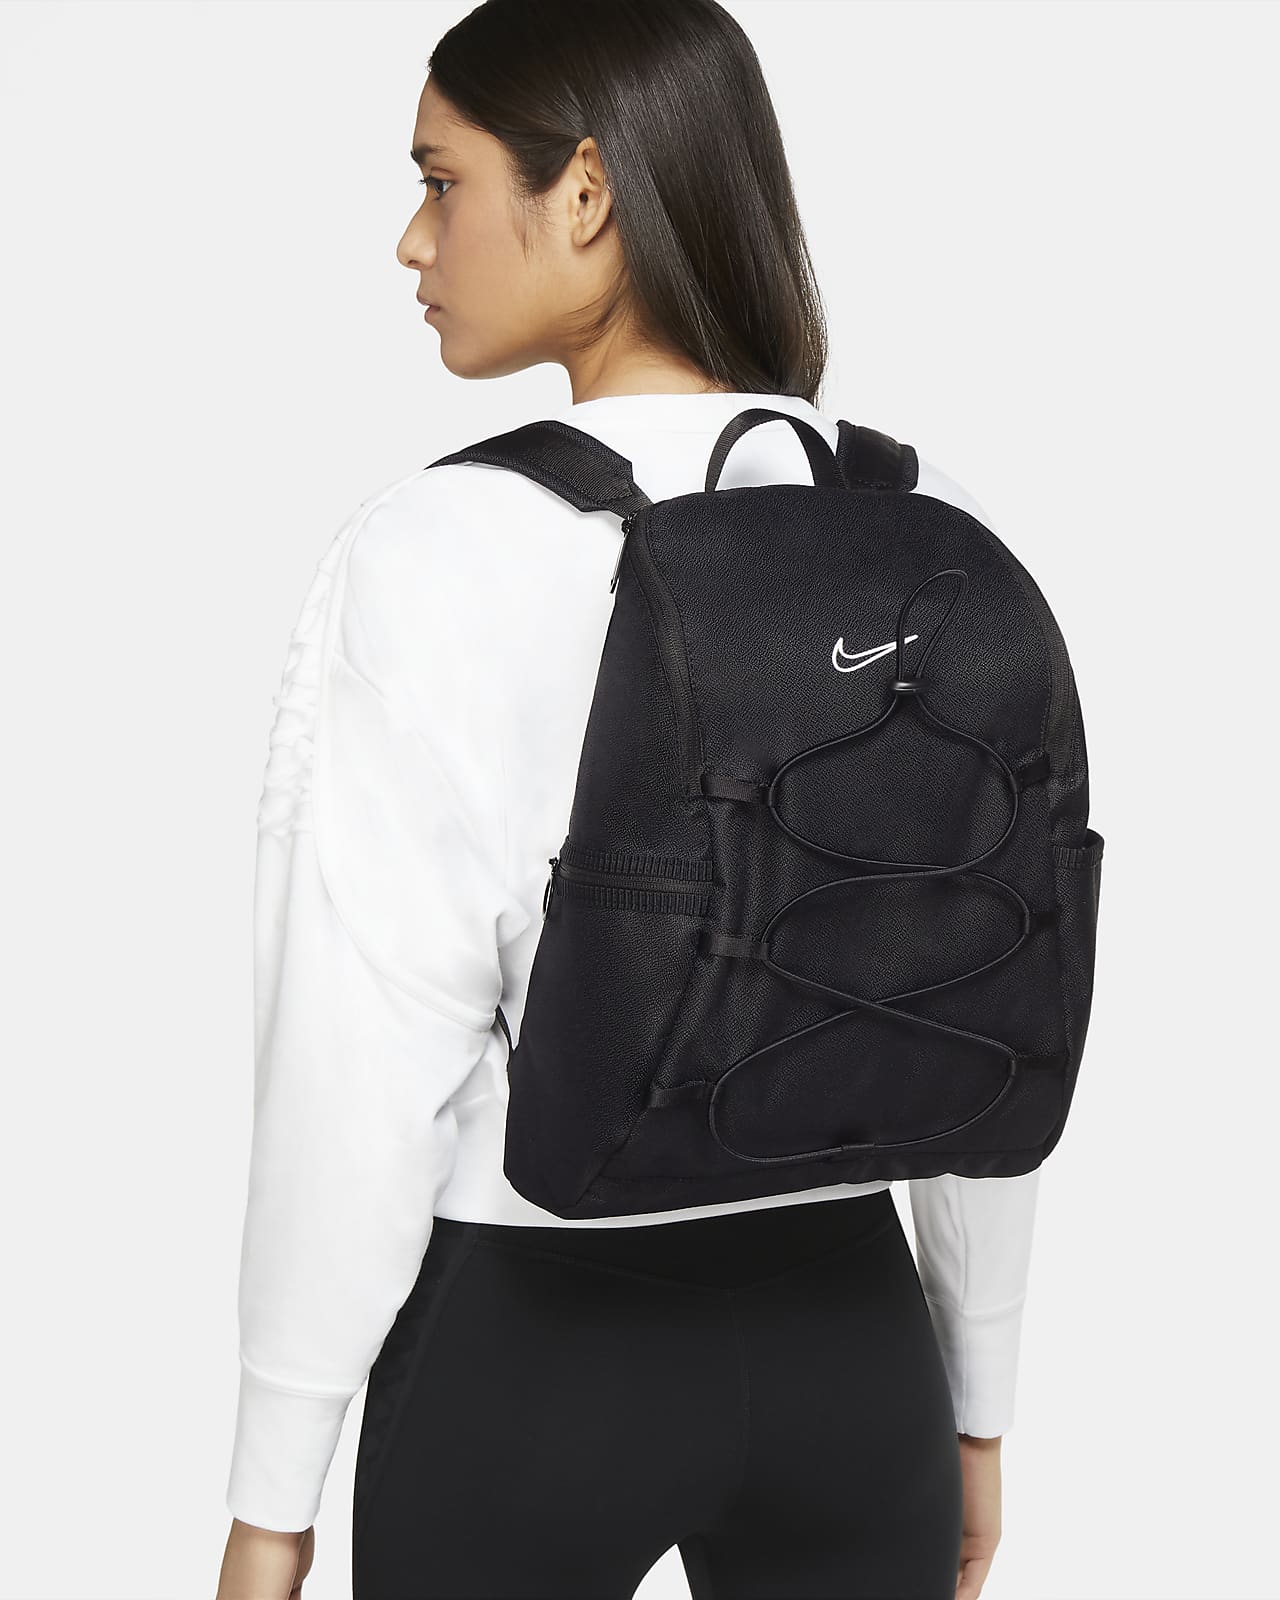 One Women's Backpack (16L). Nike.com